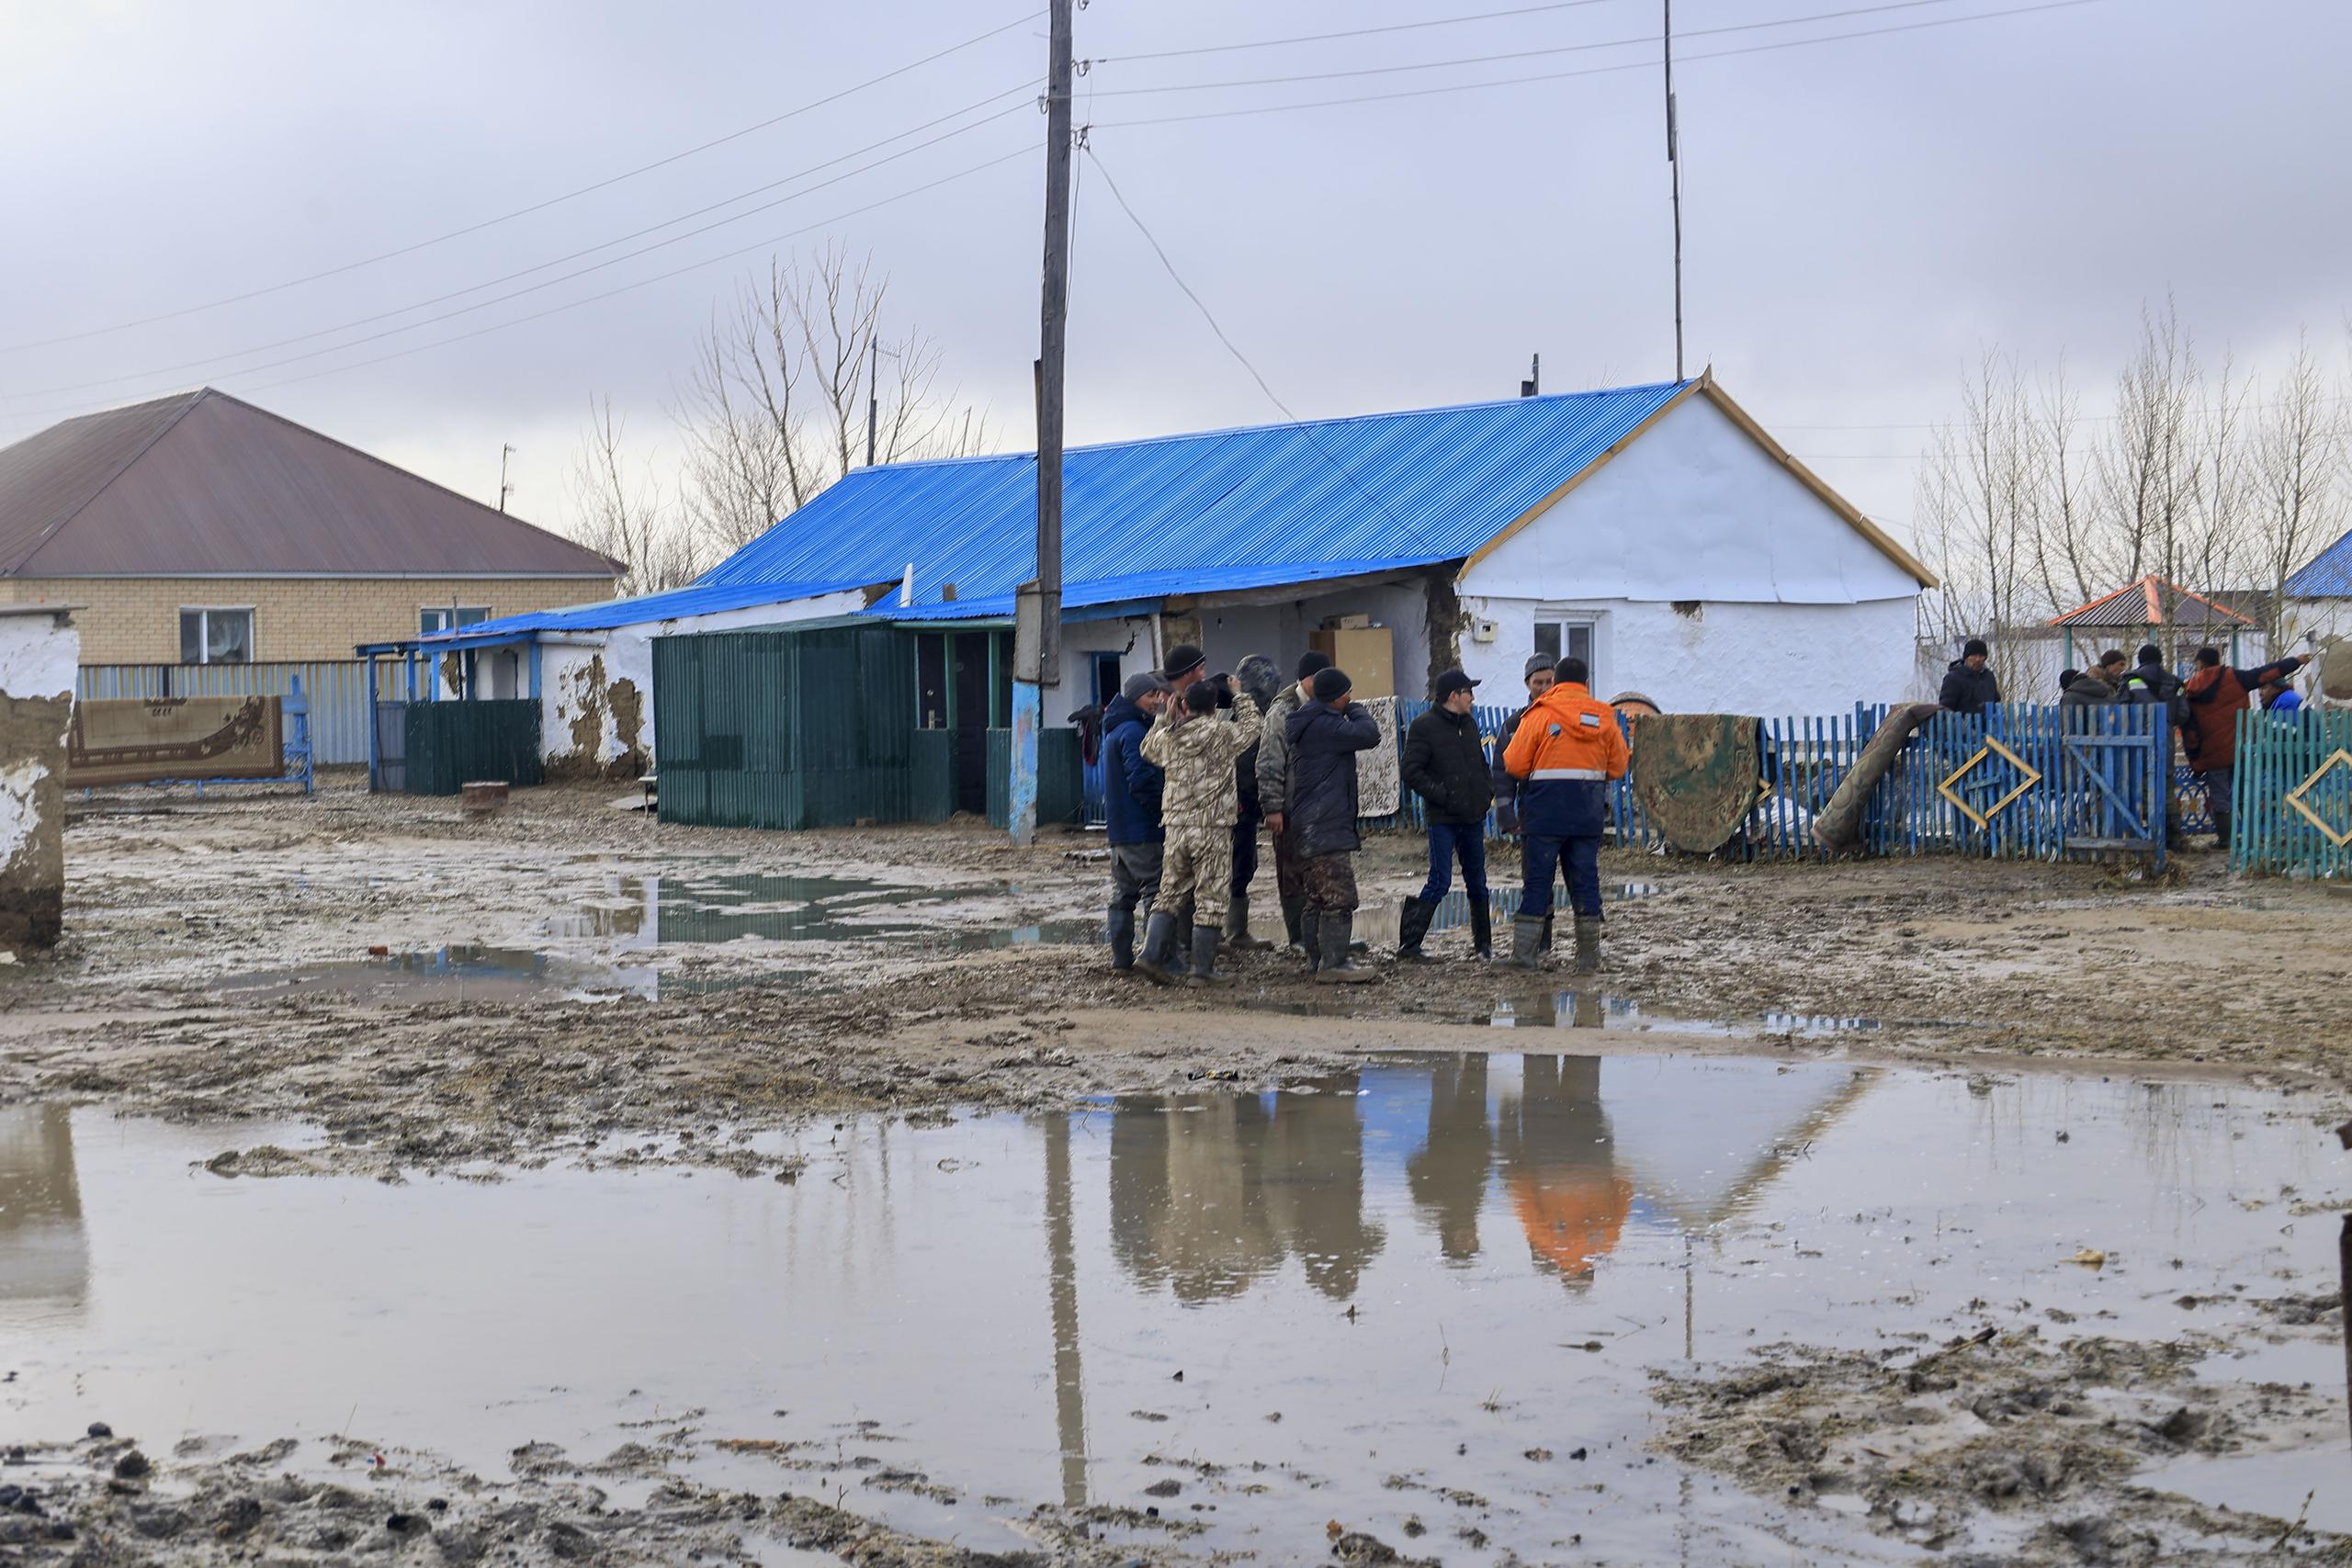 Unas personas se organizan para limpiar un área inundada a causa del inicio de la primavera y el deshielo activo en Astaná, Kazajistán. EFE/ Ministerio de Emergencia de Kazajistán.